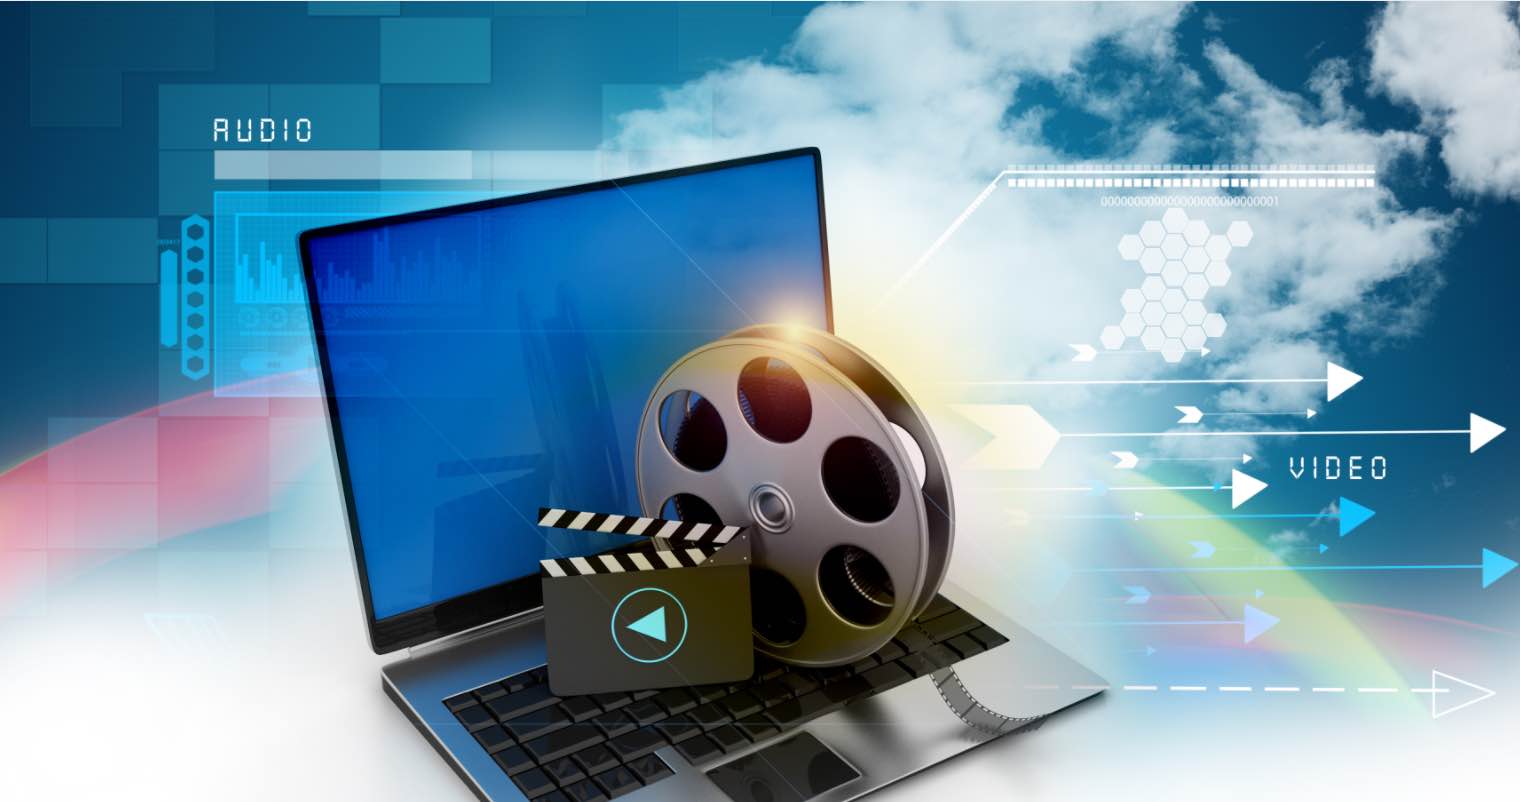 Video Editing Software Download là công cụ không thể thiếu cho những ai yêu thích chỉnh sửa video. Với nhiều tính năng tiên tiến, bạn có thể sáng tạo và làm nên những video đẹp nhất. Hãy đến và tải xuống ngay để khám phá thế giới chỉnh sửa video chuyên nghiệp!